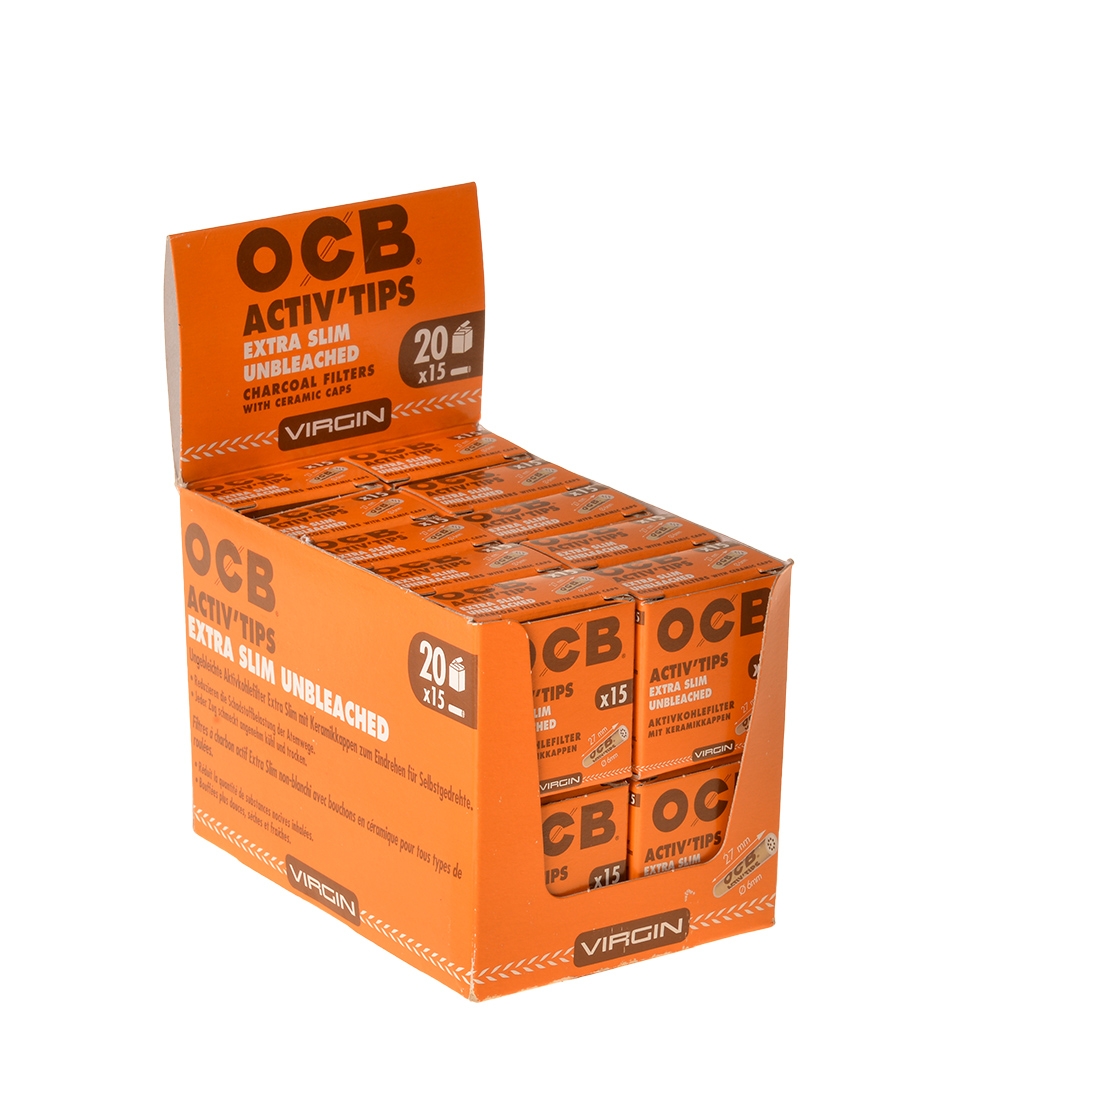 OCB Activ Tips - Filtres charbon actif - Boite de 10 filtres cigarettes